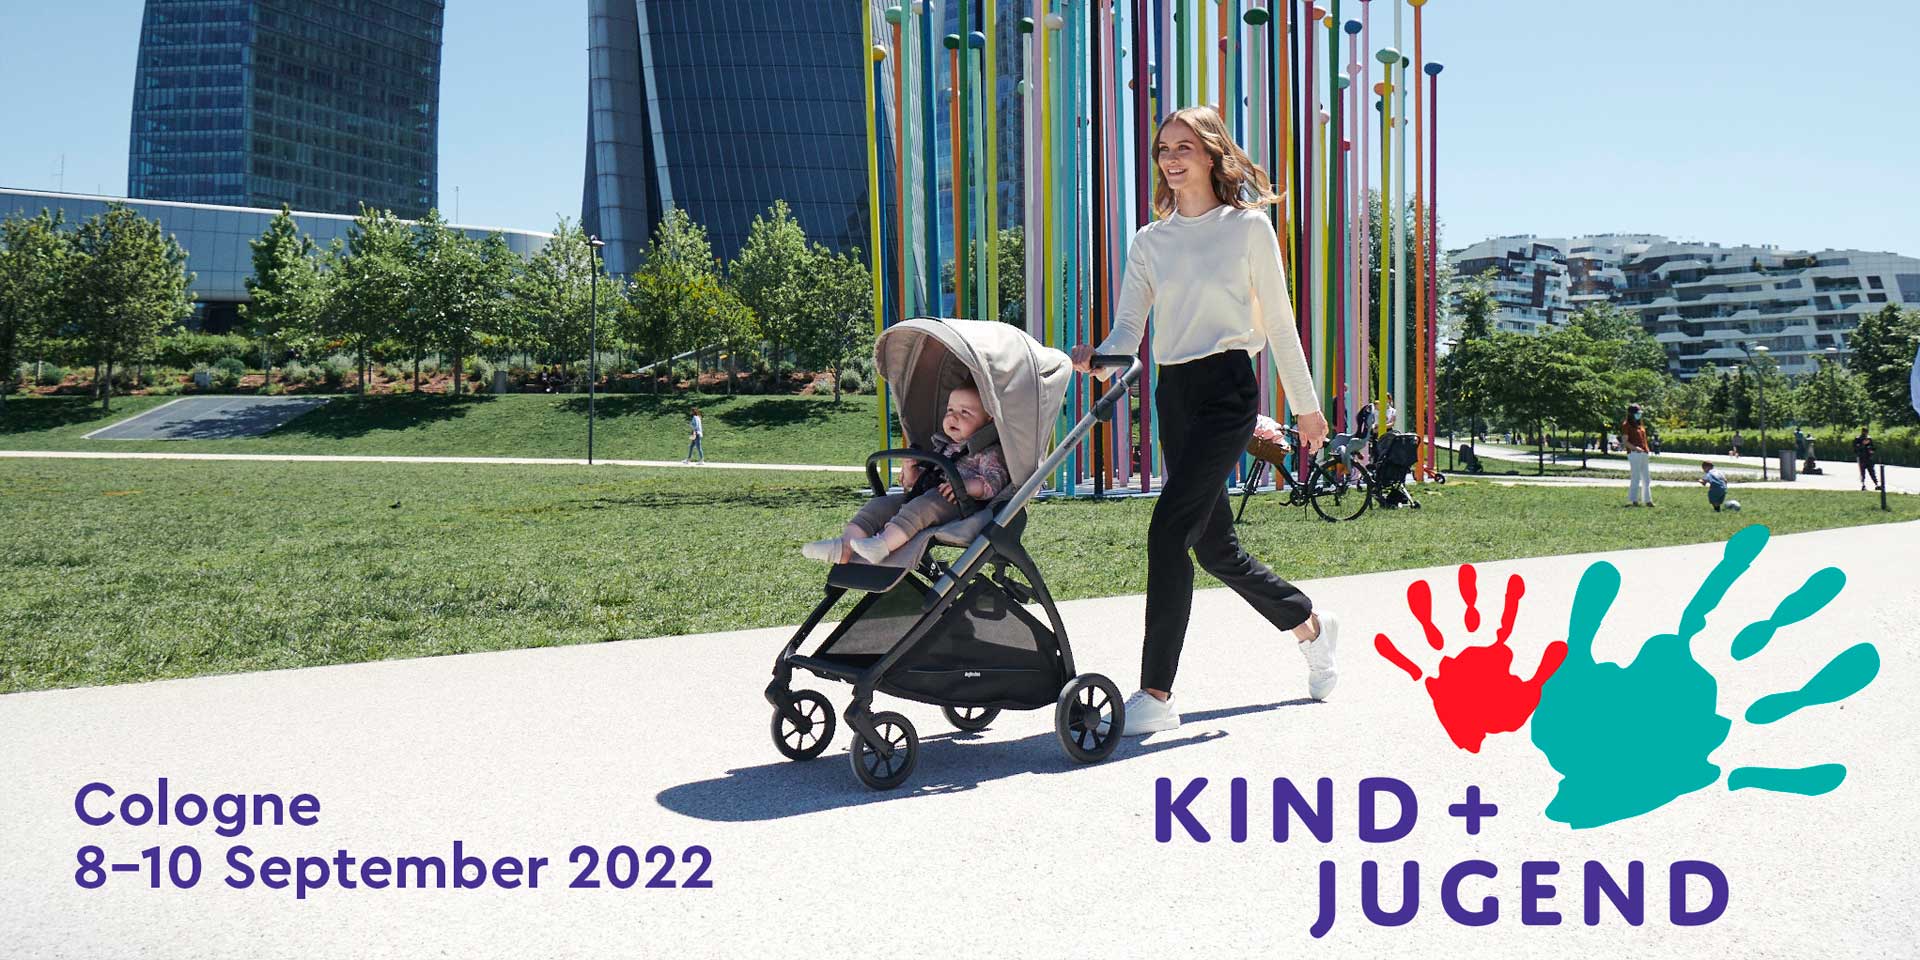 Kind + Jugend: la gamma di prodotti a misura di bambino